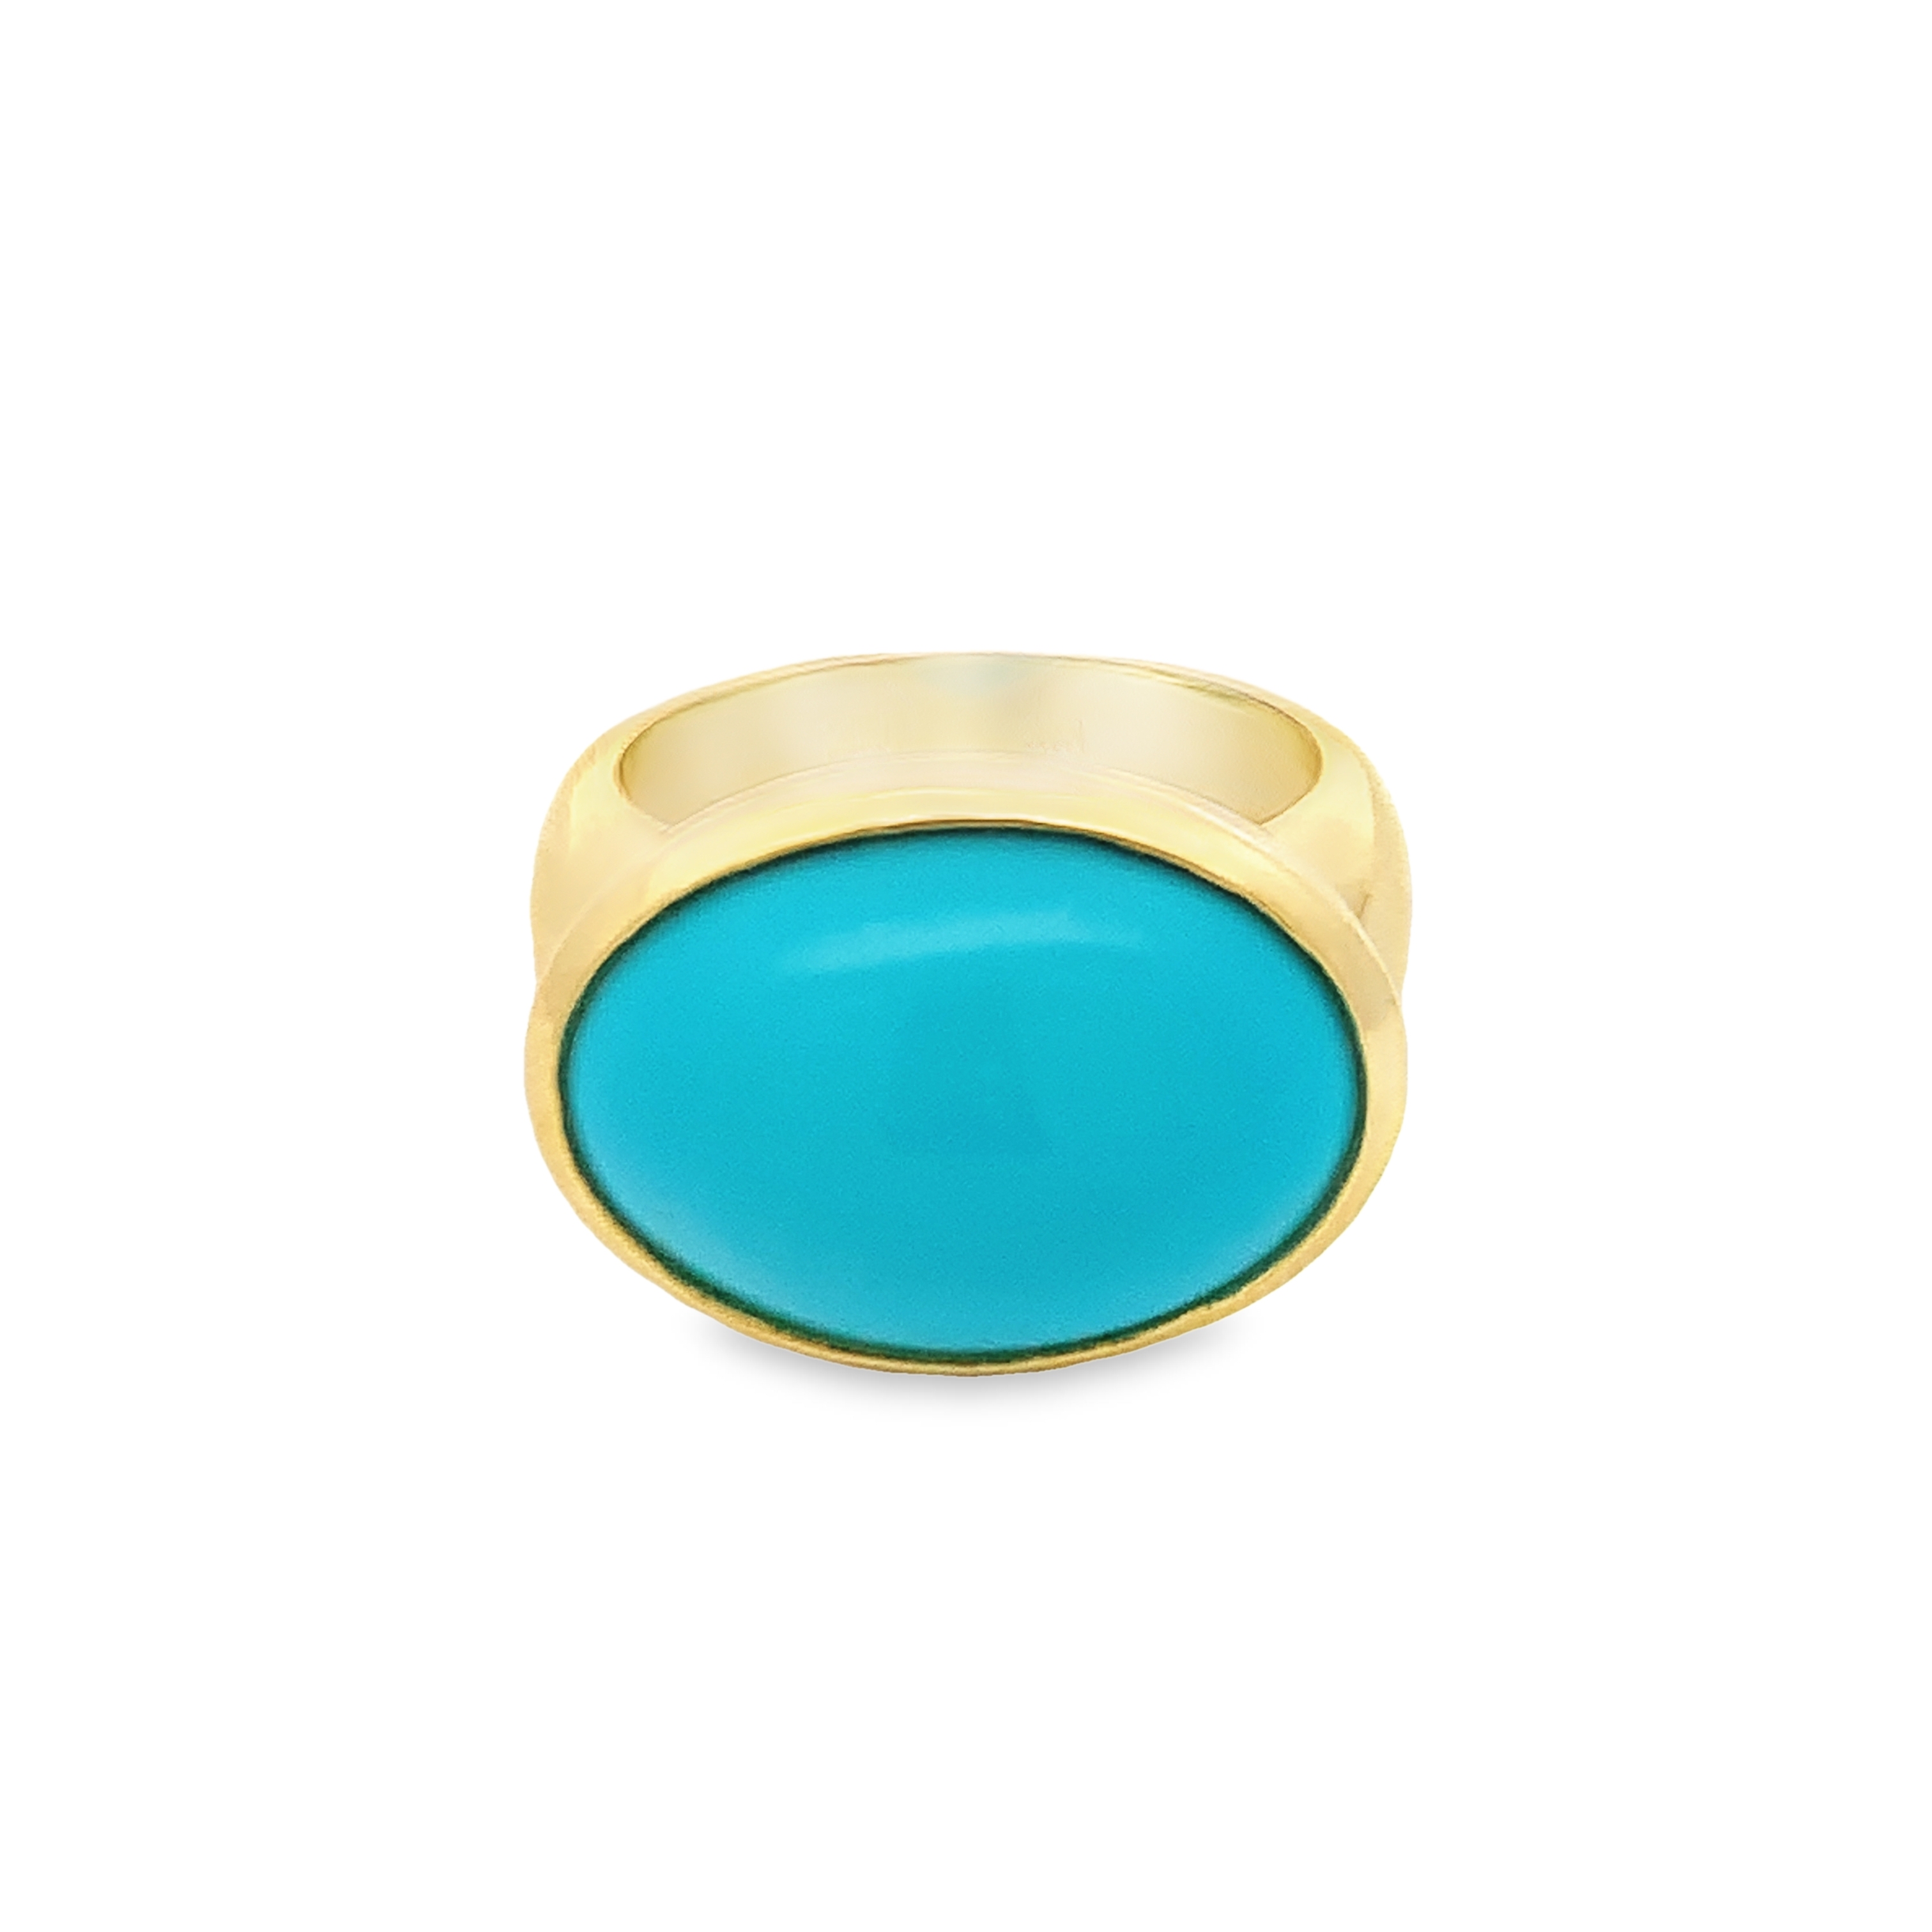 Lauren K 18K Yellow Gold Turquoise Bezel Ring